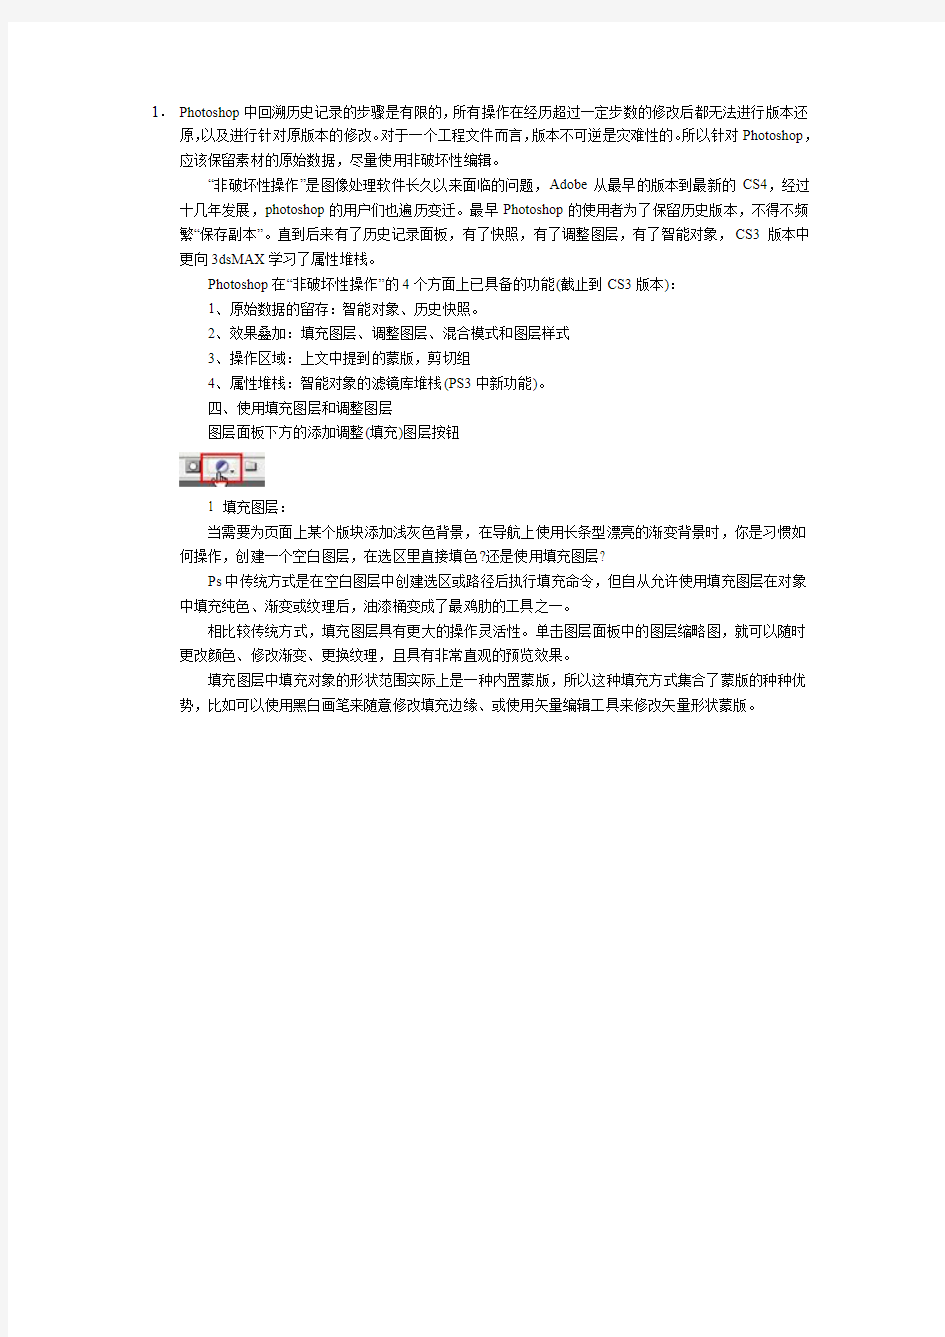 巧妙管理PhotoShop文档提升工作效率郑州清新教育提供